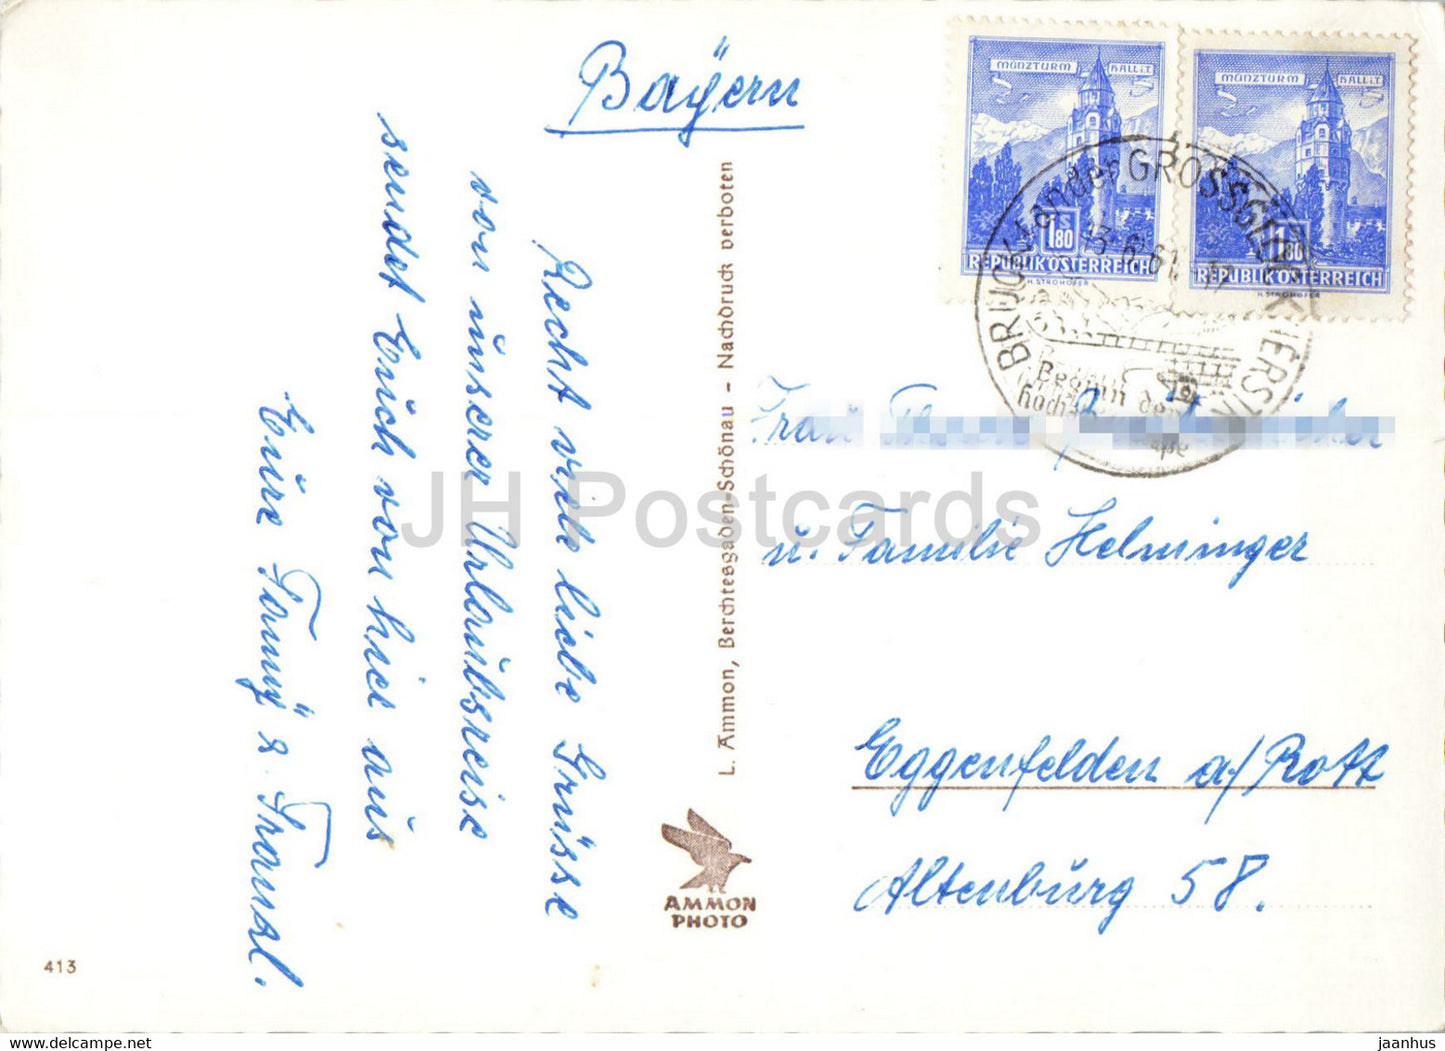 Heiligen Blut mit Grossglockner - carte postale ancienne - 1961 - Autriche - utilisé